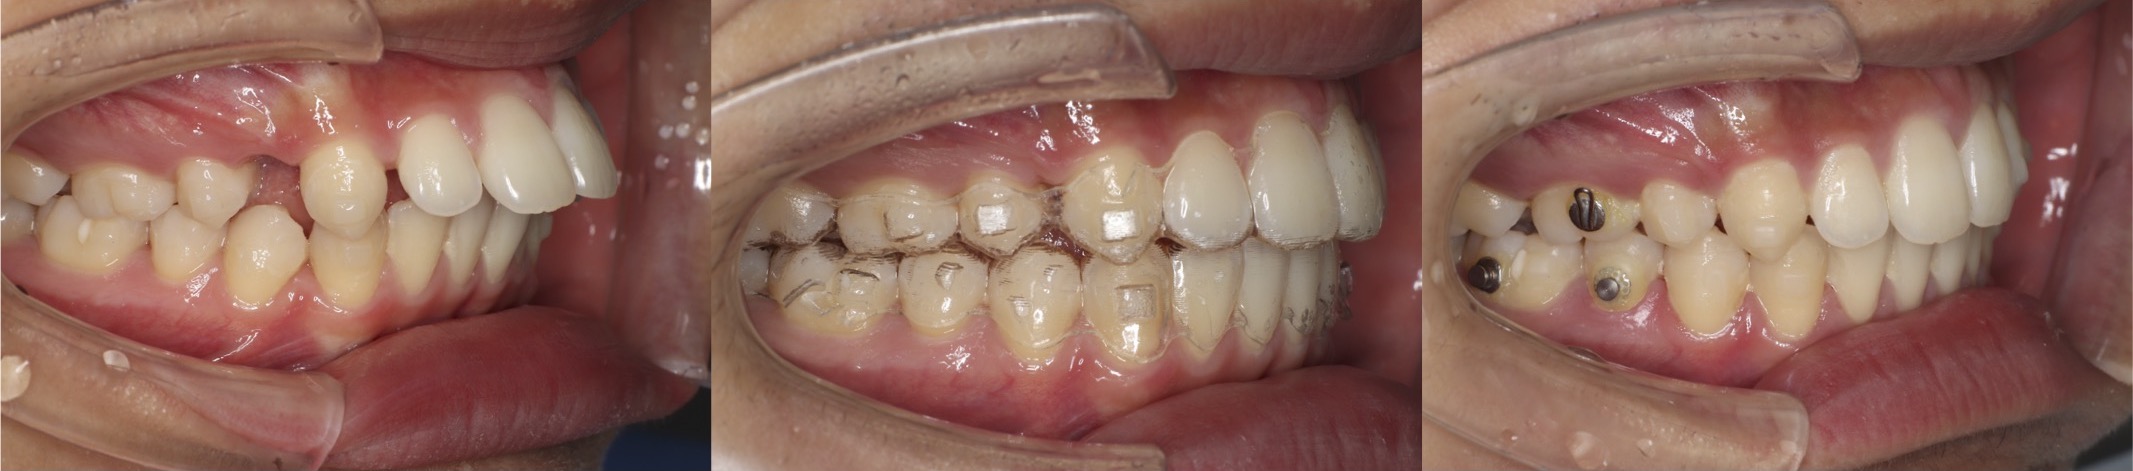 インビザライン・上顎前突抜歯症例